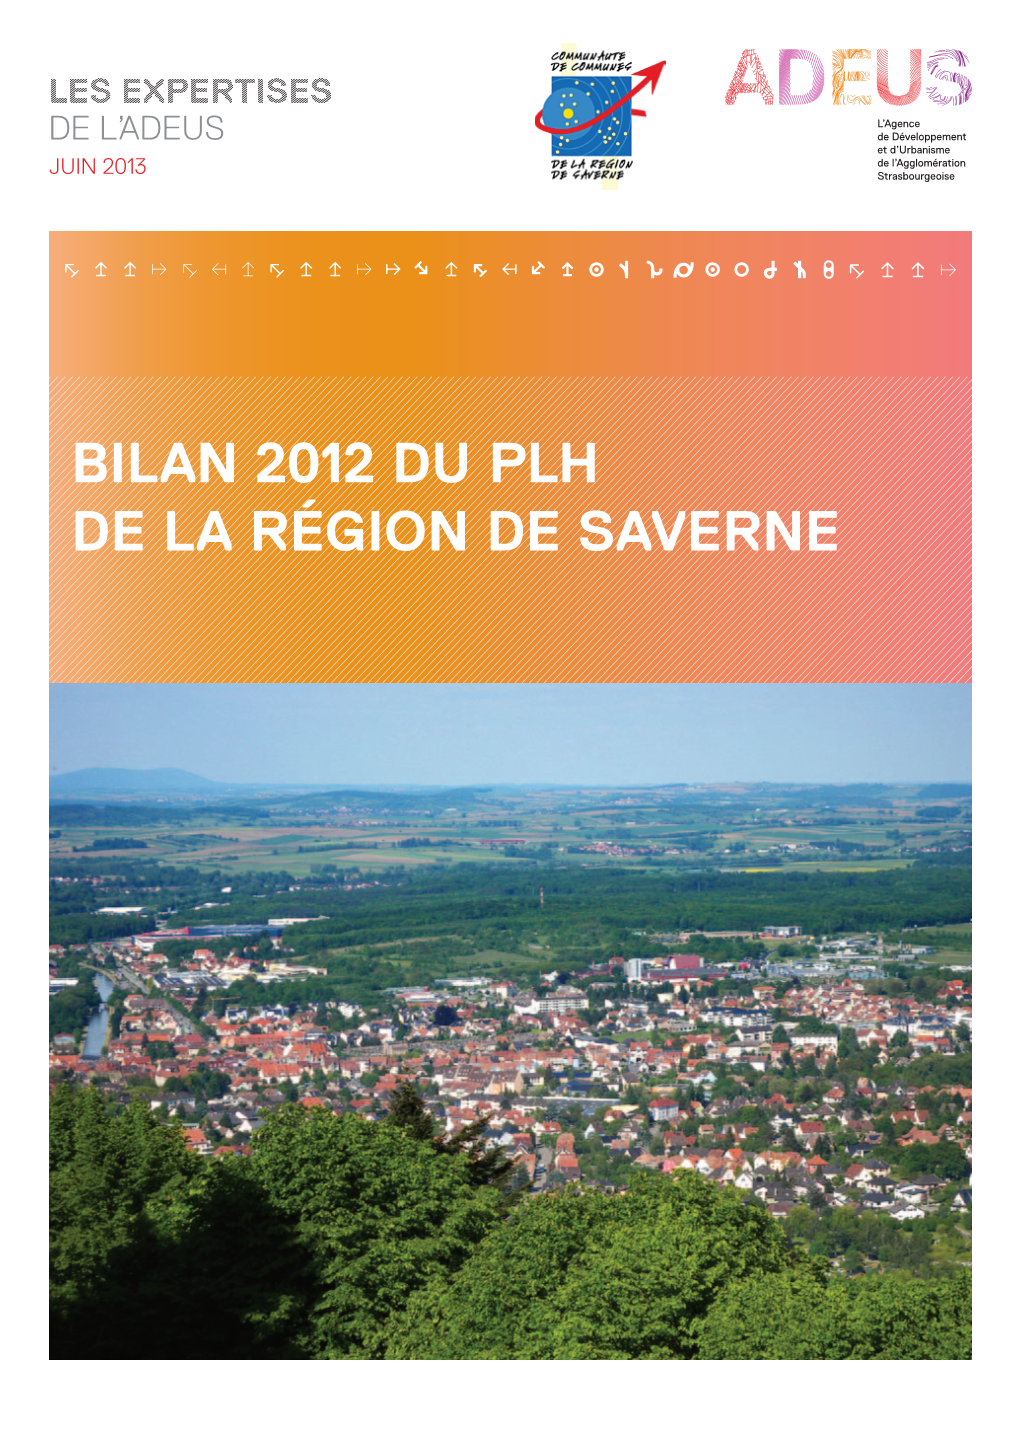 Bilan 2012 Du PLH DE LA Région DE SAVERNE Bilan 2012 Du PLH DE LA Région DE SAVERNE